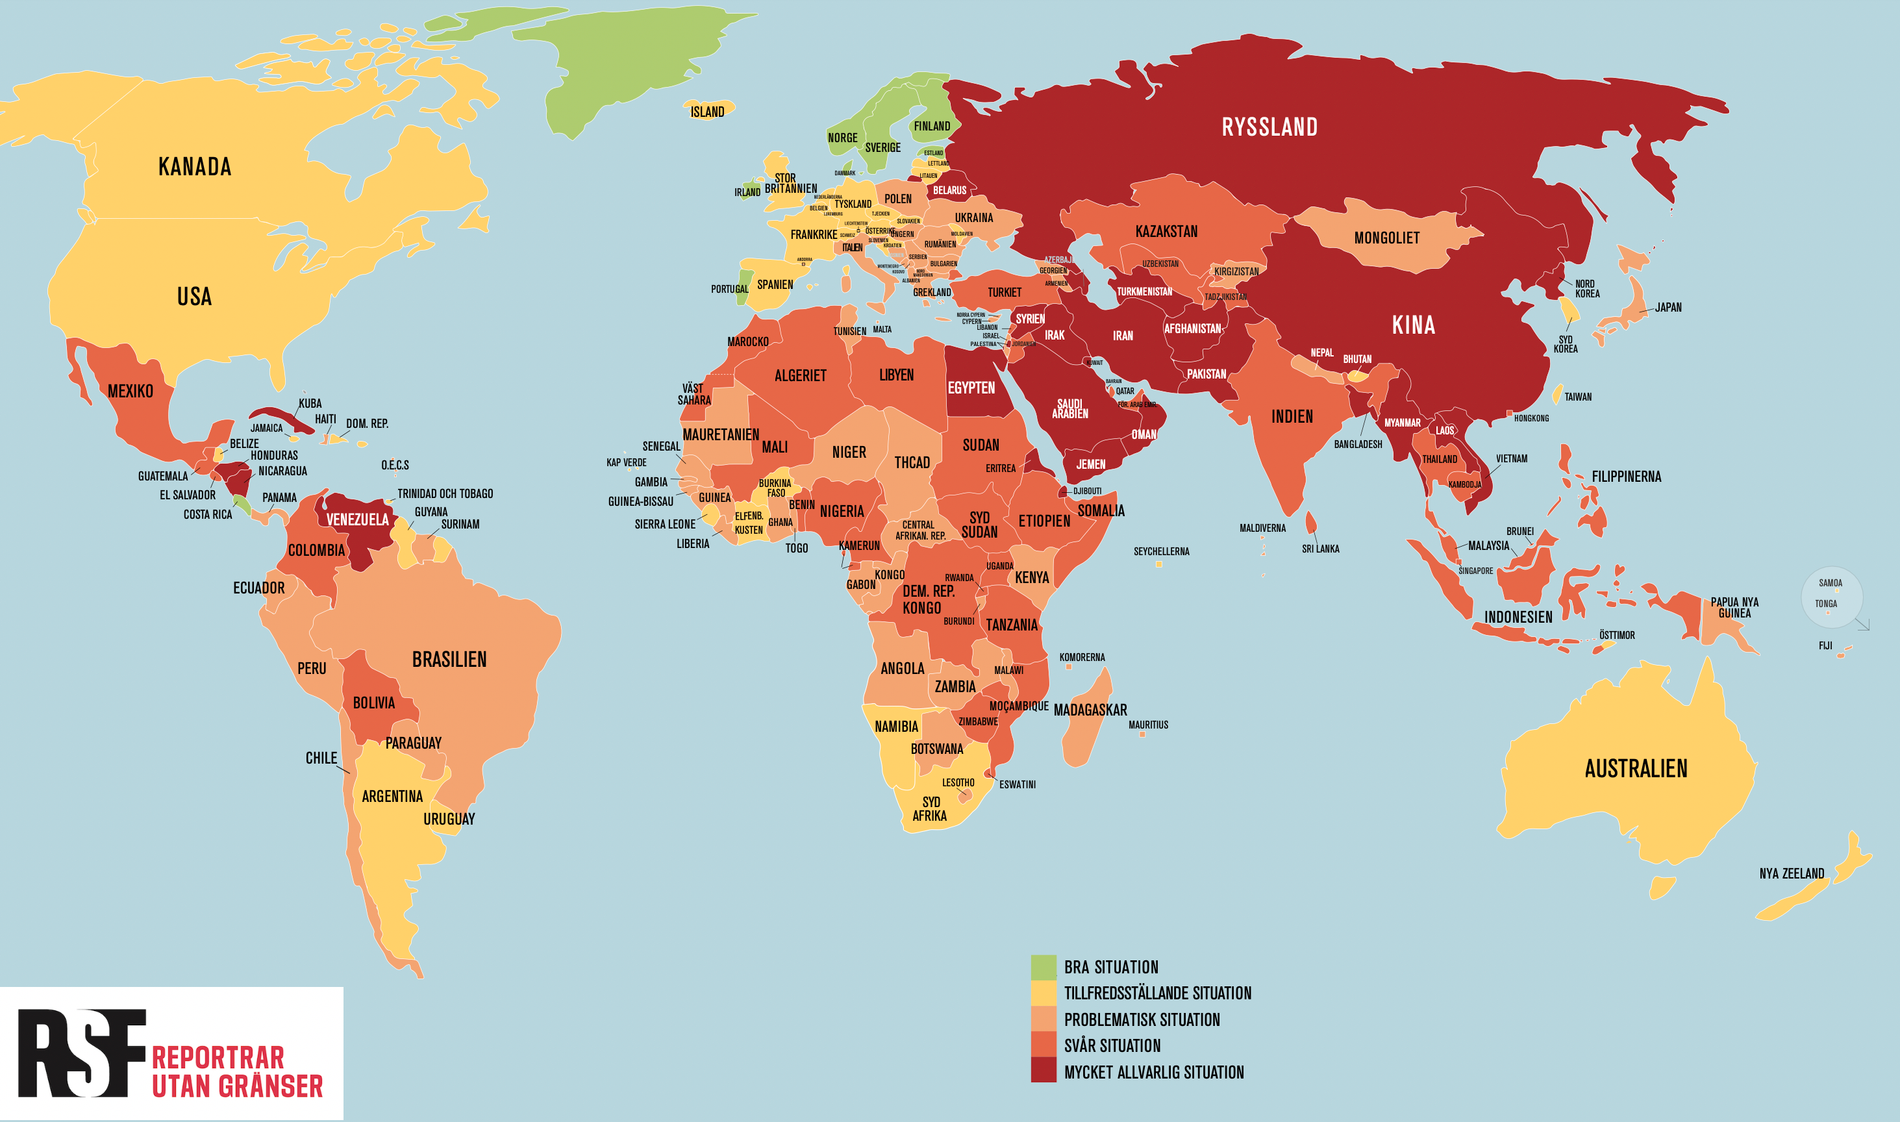 Kartan visar situationen för journalister världen över, enligt organisationen Reportrar utan gränsers senaste pressfrihetsindex.